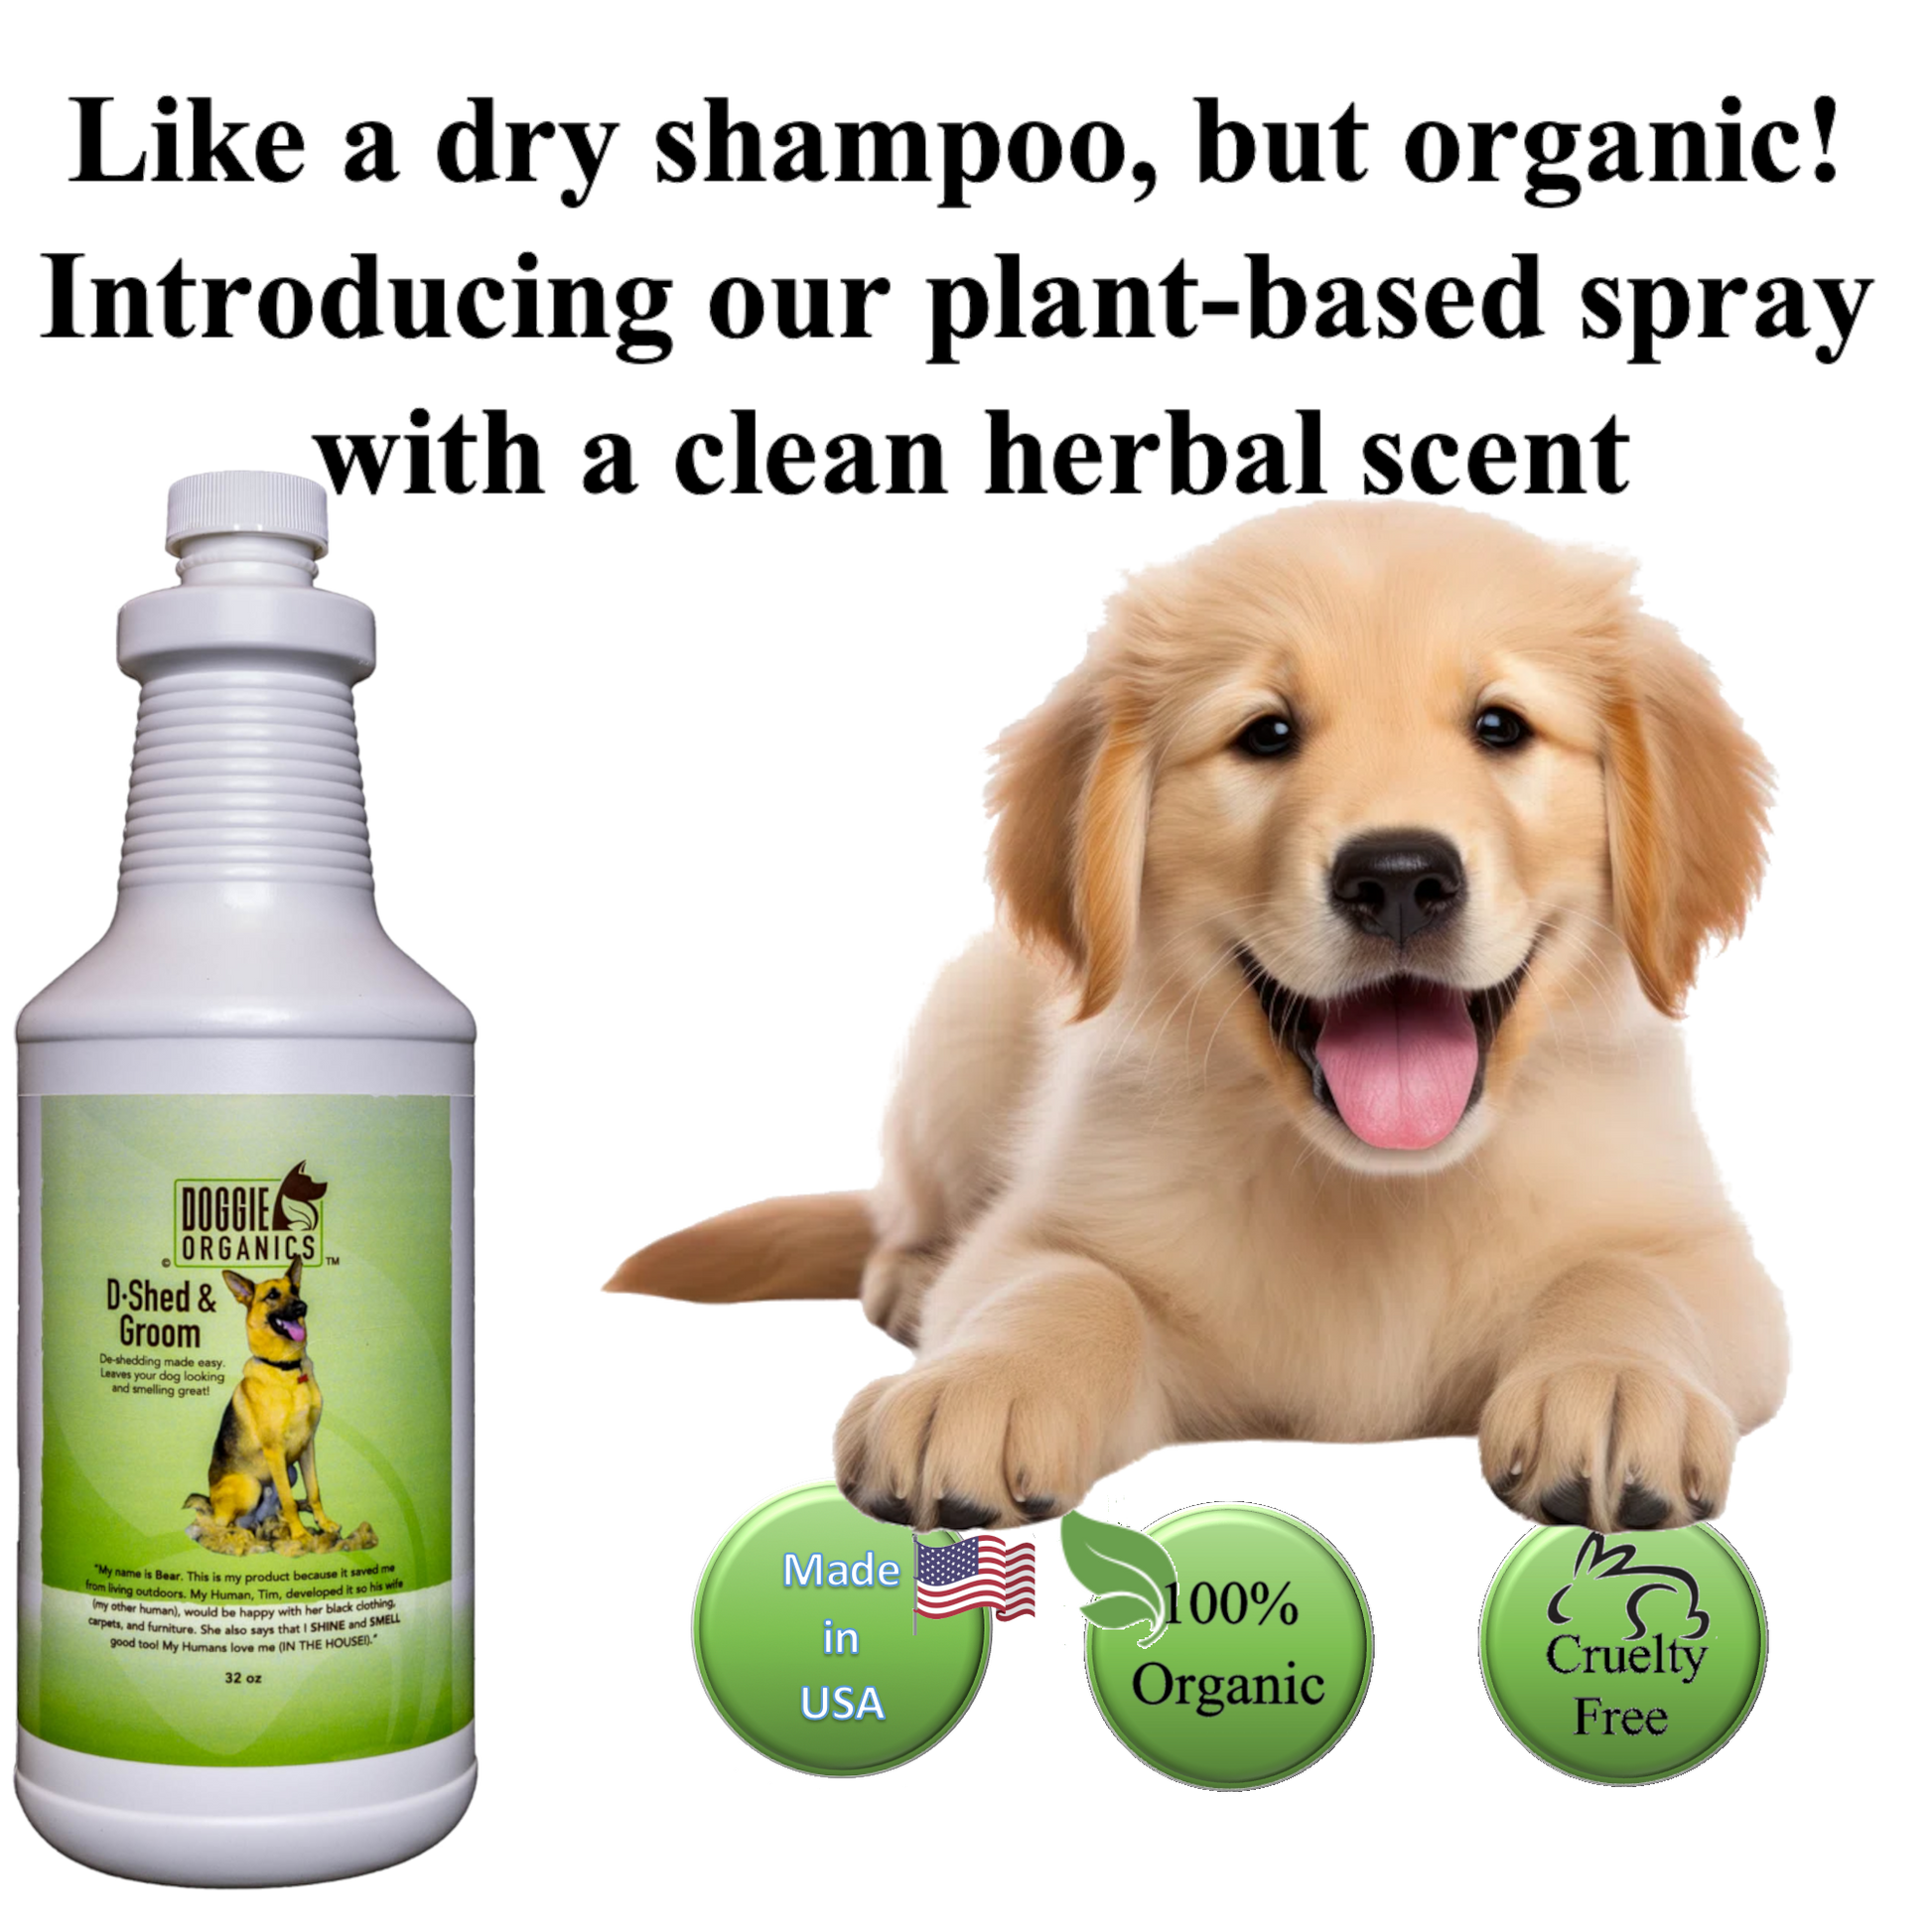 Doggie Organics D-Shed and Groom Dry Shampoo